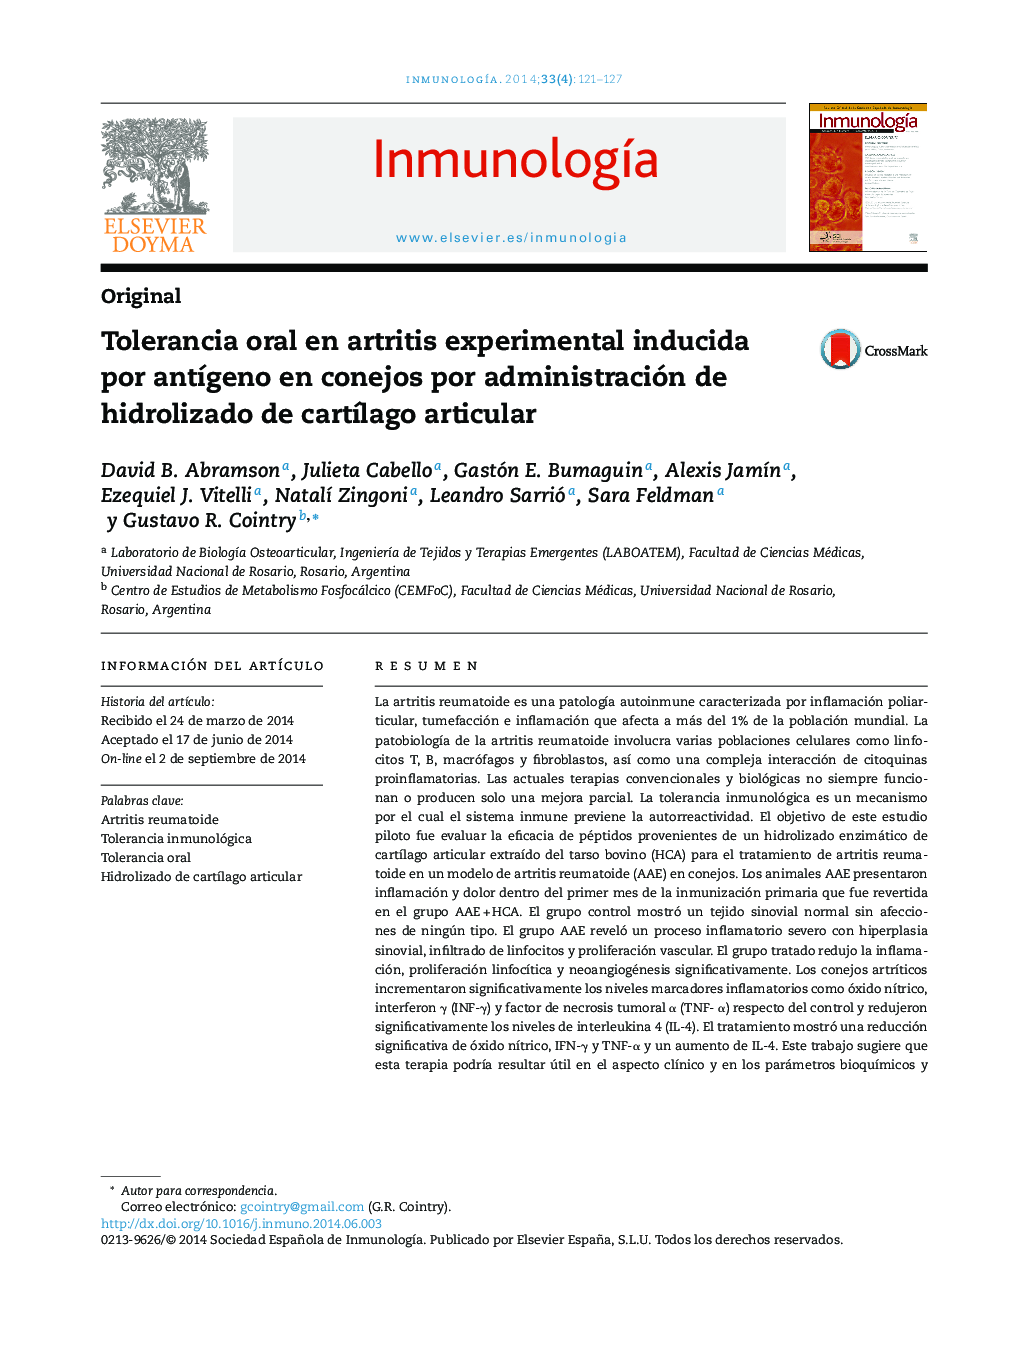 Tolerancia oral en artritis experimental inducida por antÃ­geno en conejos por administración de hidrolizado de cartÃ­lago articular